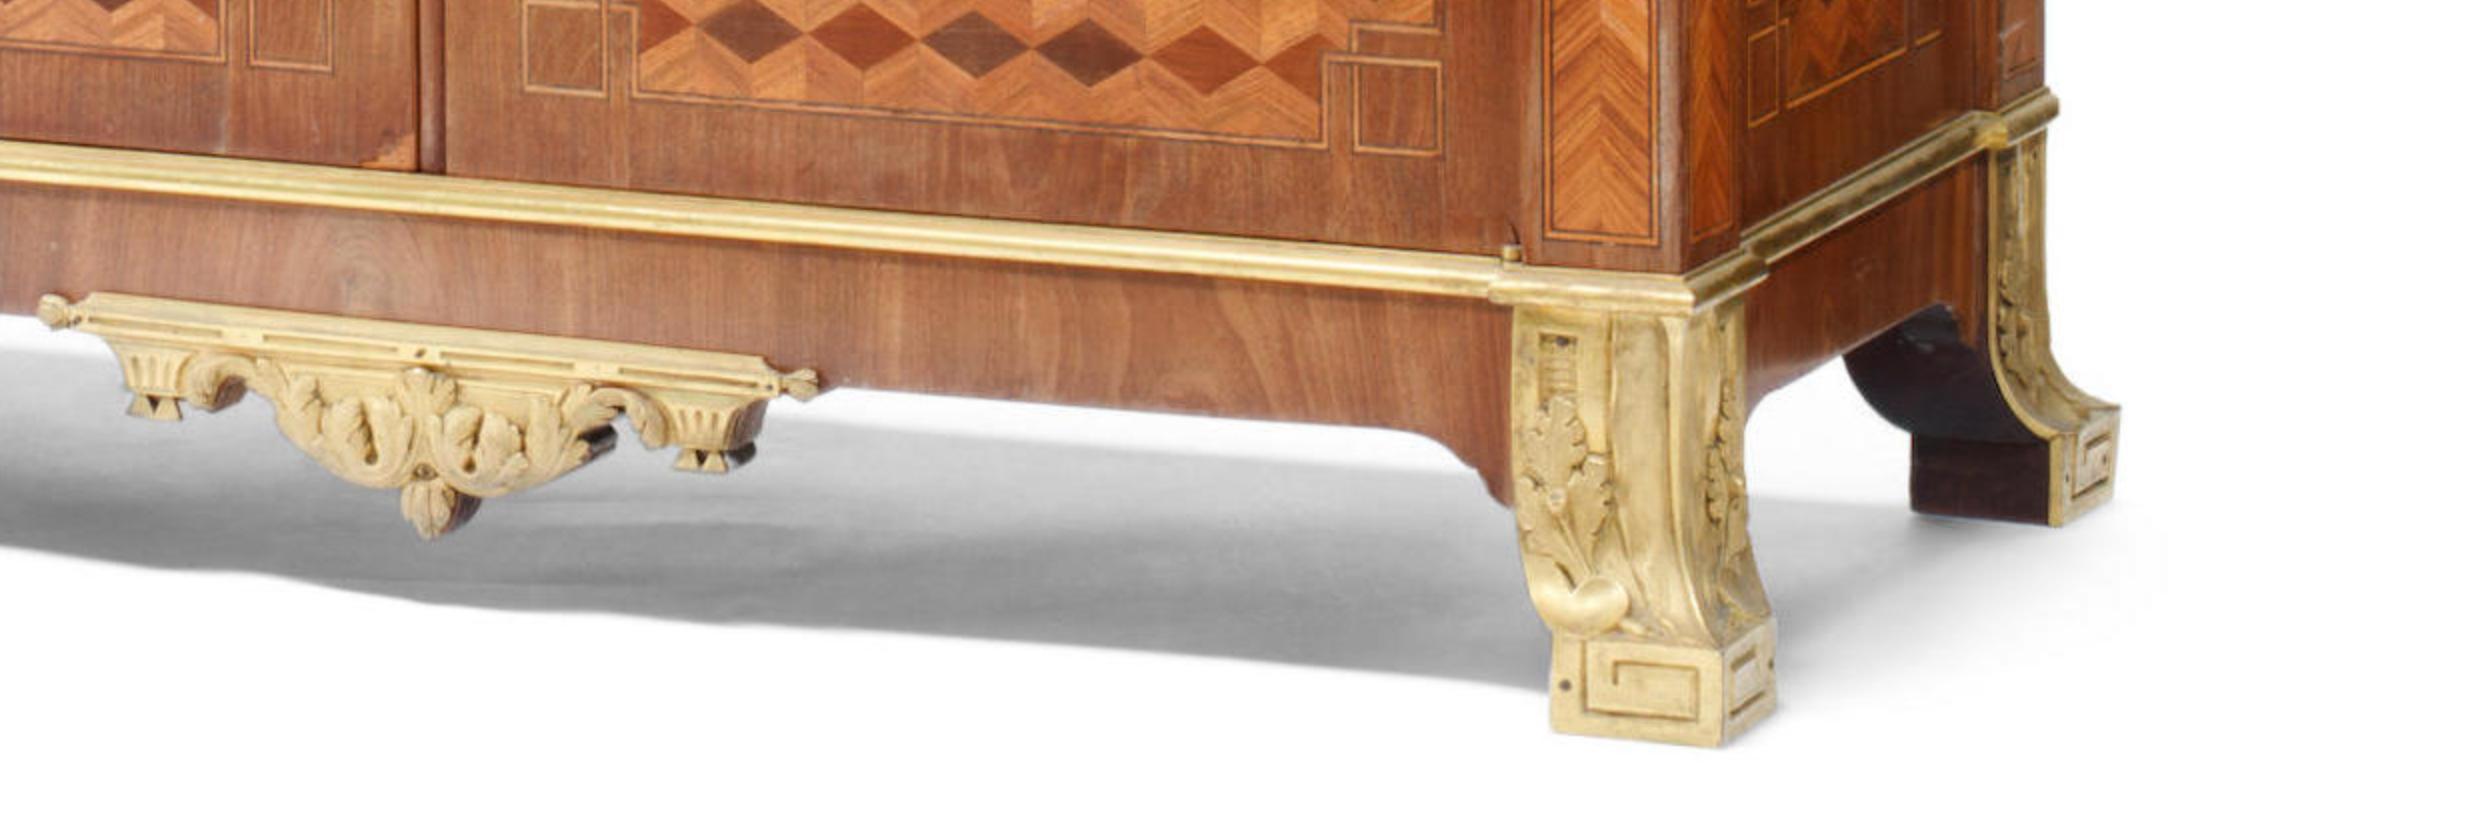 Die Brèche d'Alep-Marmorplatte über einer langen Friesschublade, die aufklappbare Sturzfront mit vergoldeter brauner Lederschreibfläche, das eingepasste Innere mit vier offenen Fächern und einer langen Schublade, darüber zwei Schranktüren, das